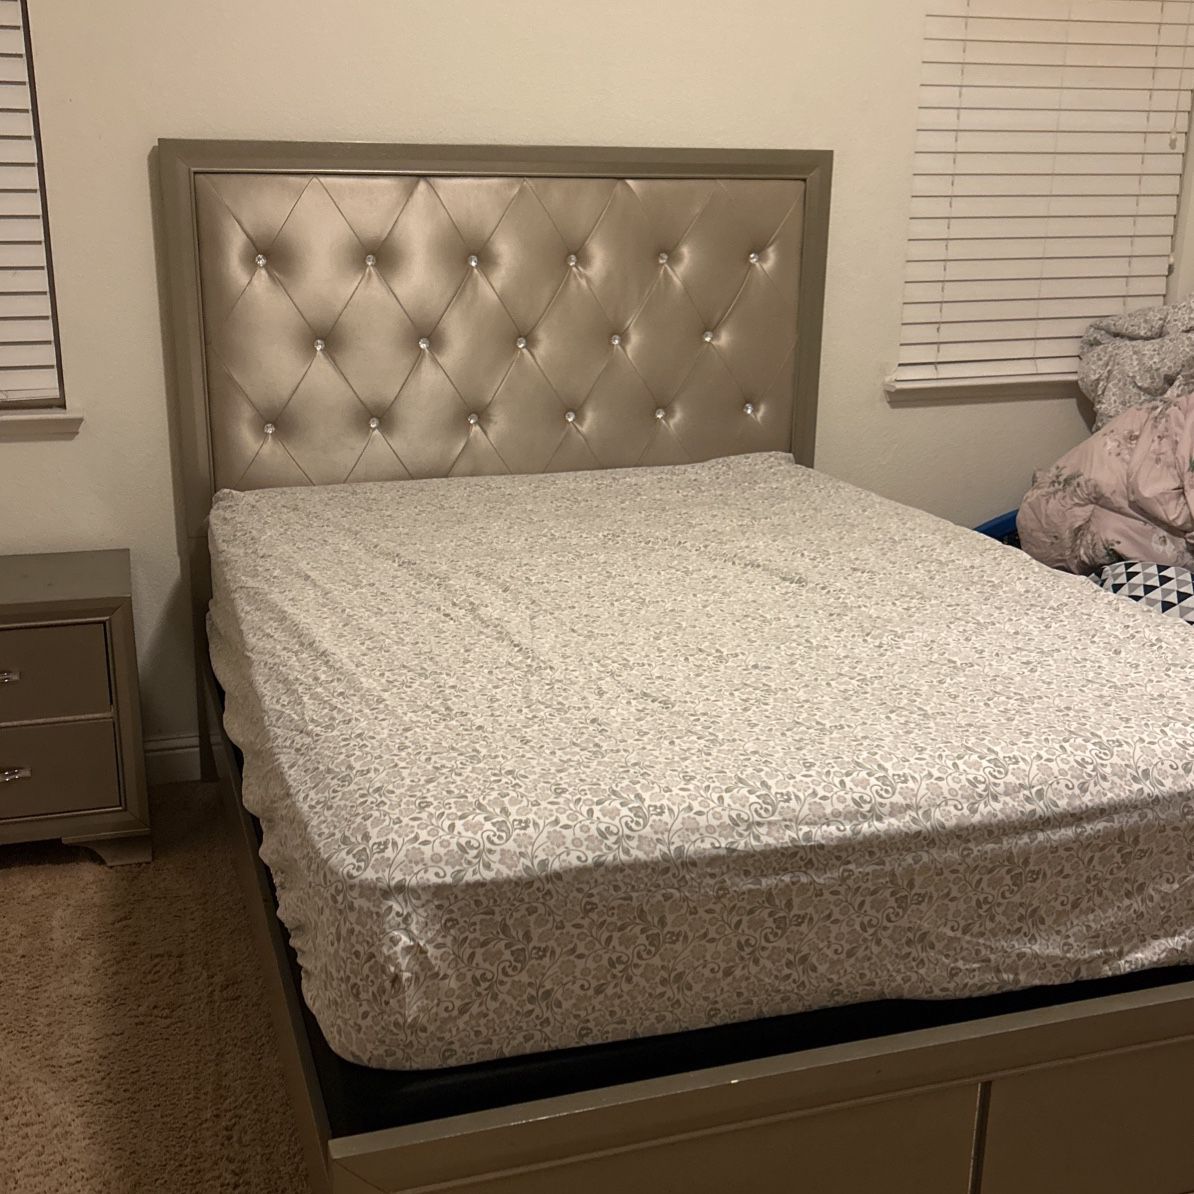 Queen Size Bedroom Set